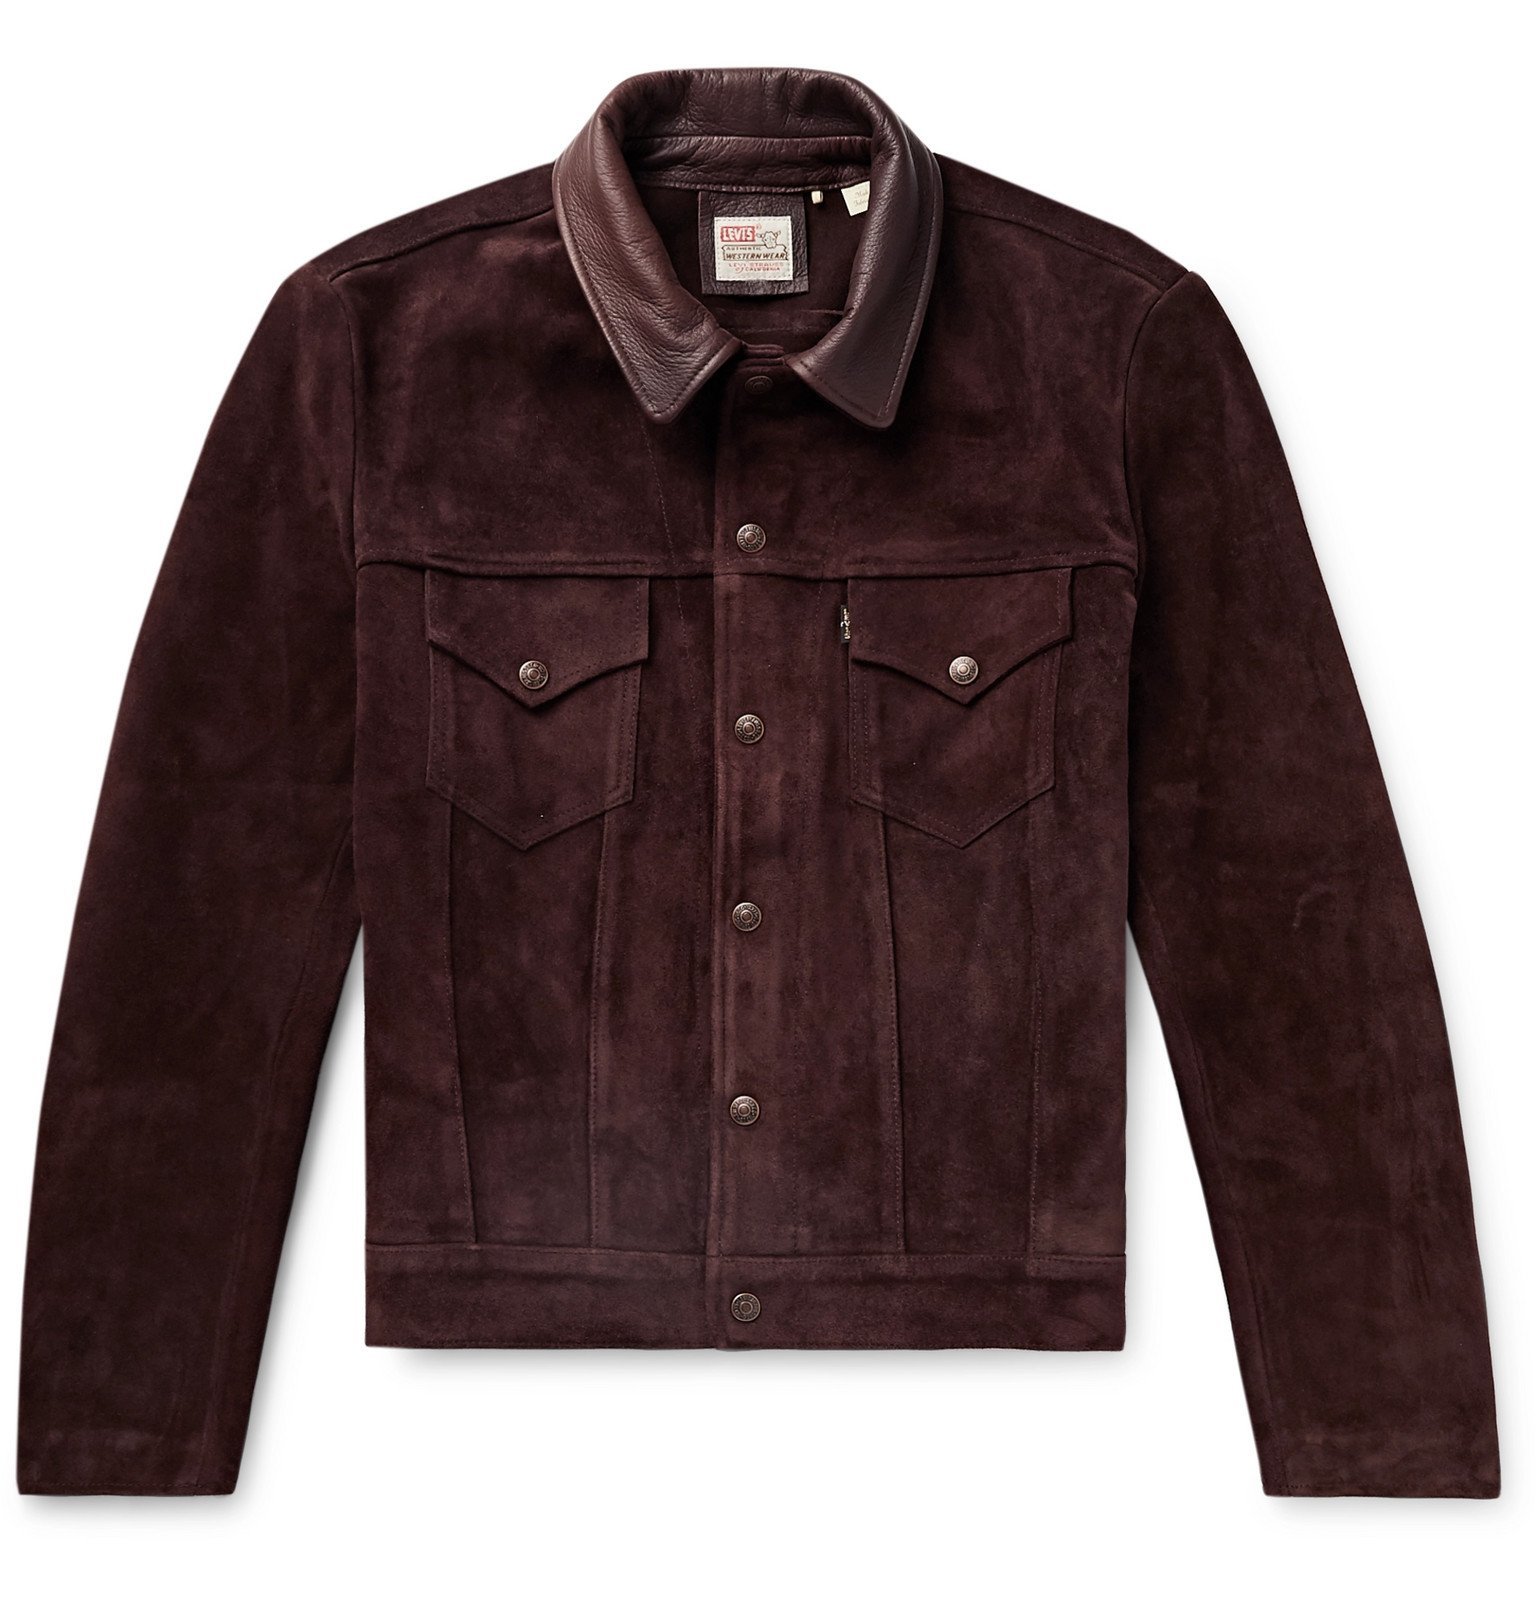 Levi's Vintage Clothing - Leather-Trimmed Suede Trucker Jacket - Brown  Levi's Vintage